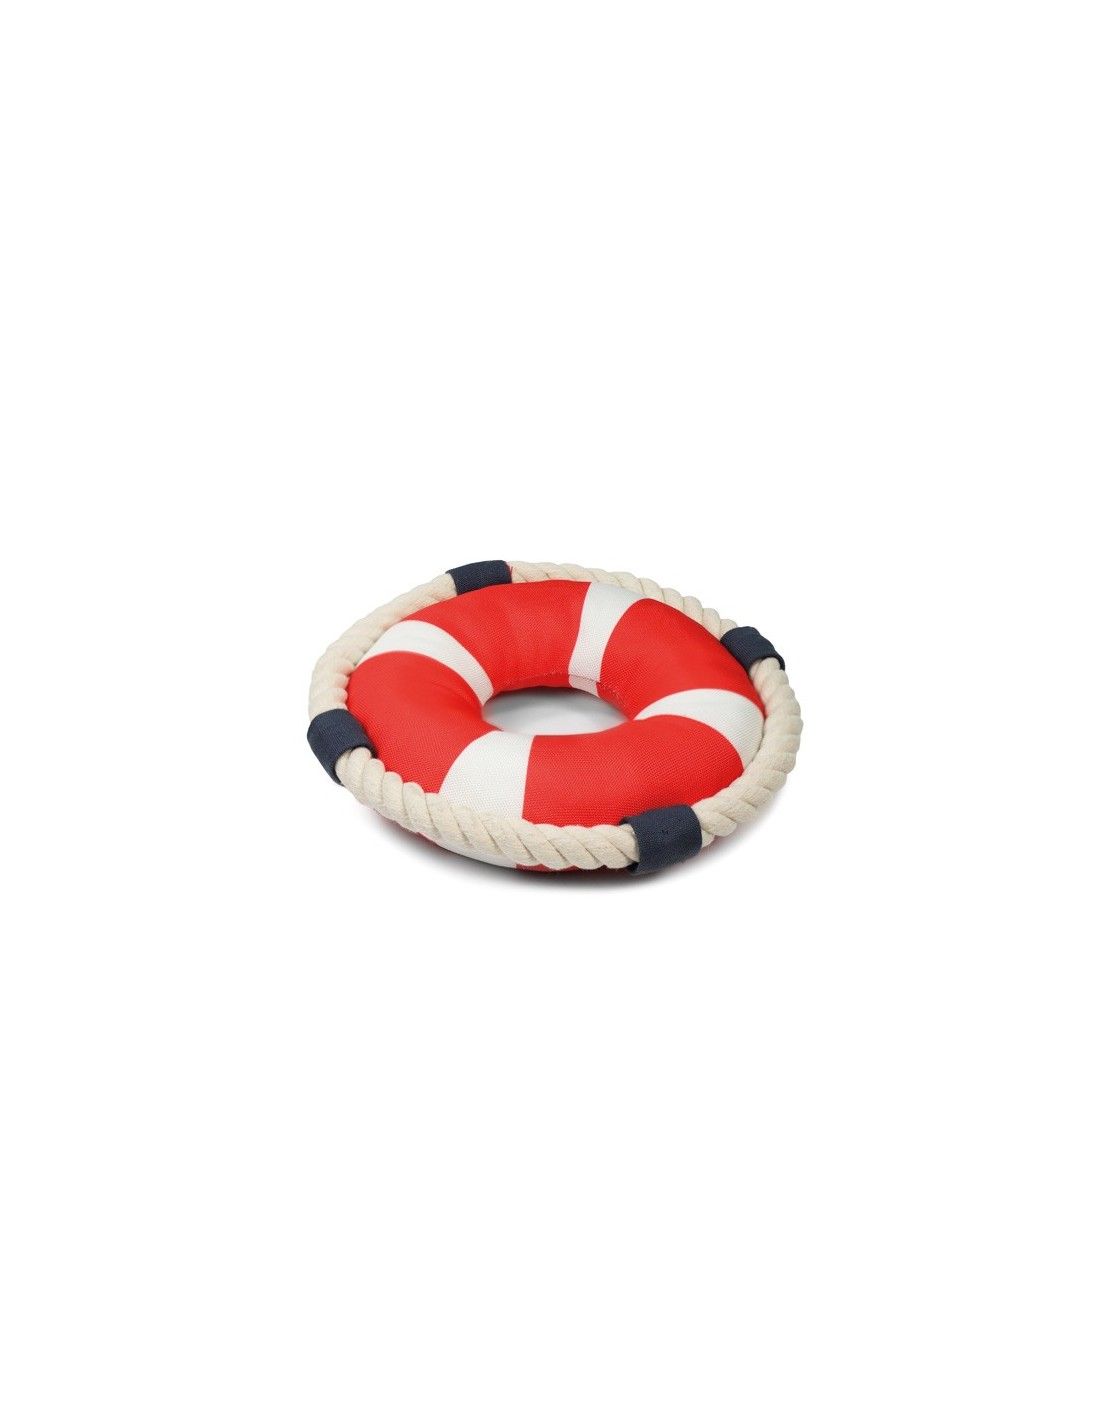 Plovoucí hračka s pískátkem - záchranný kruh Record